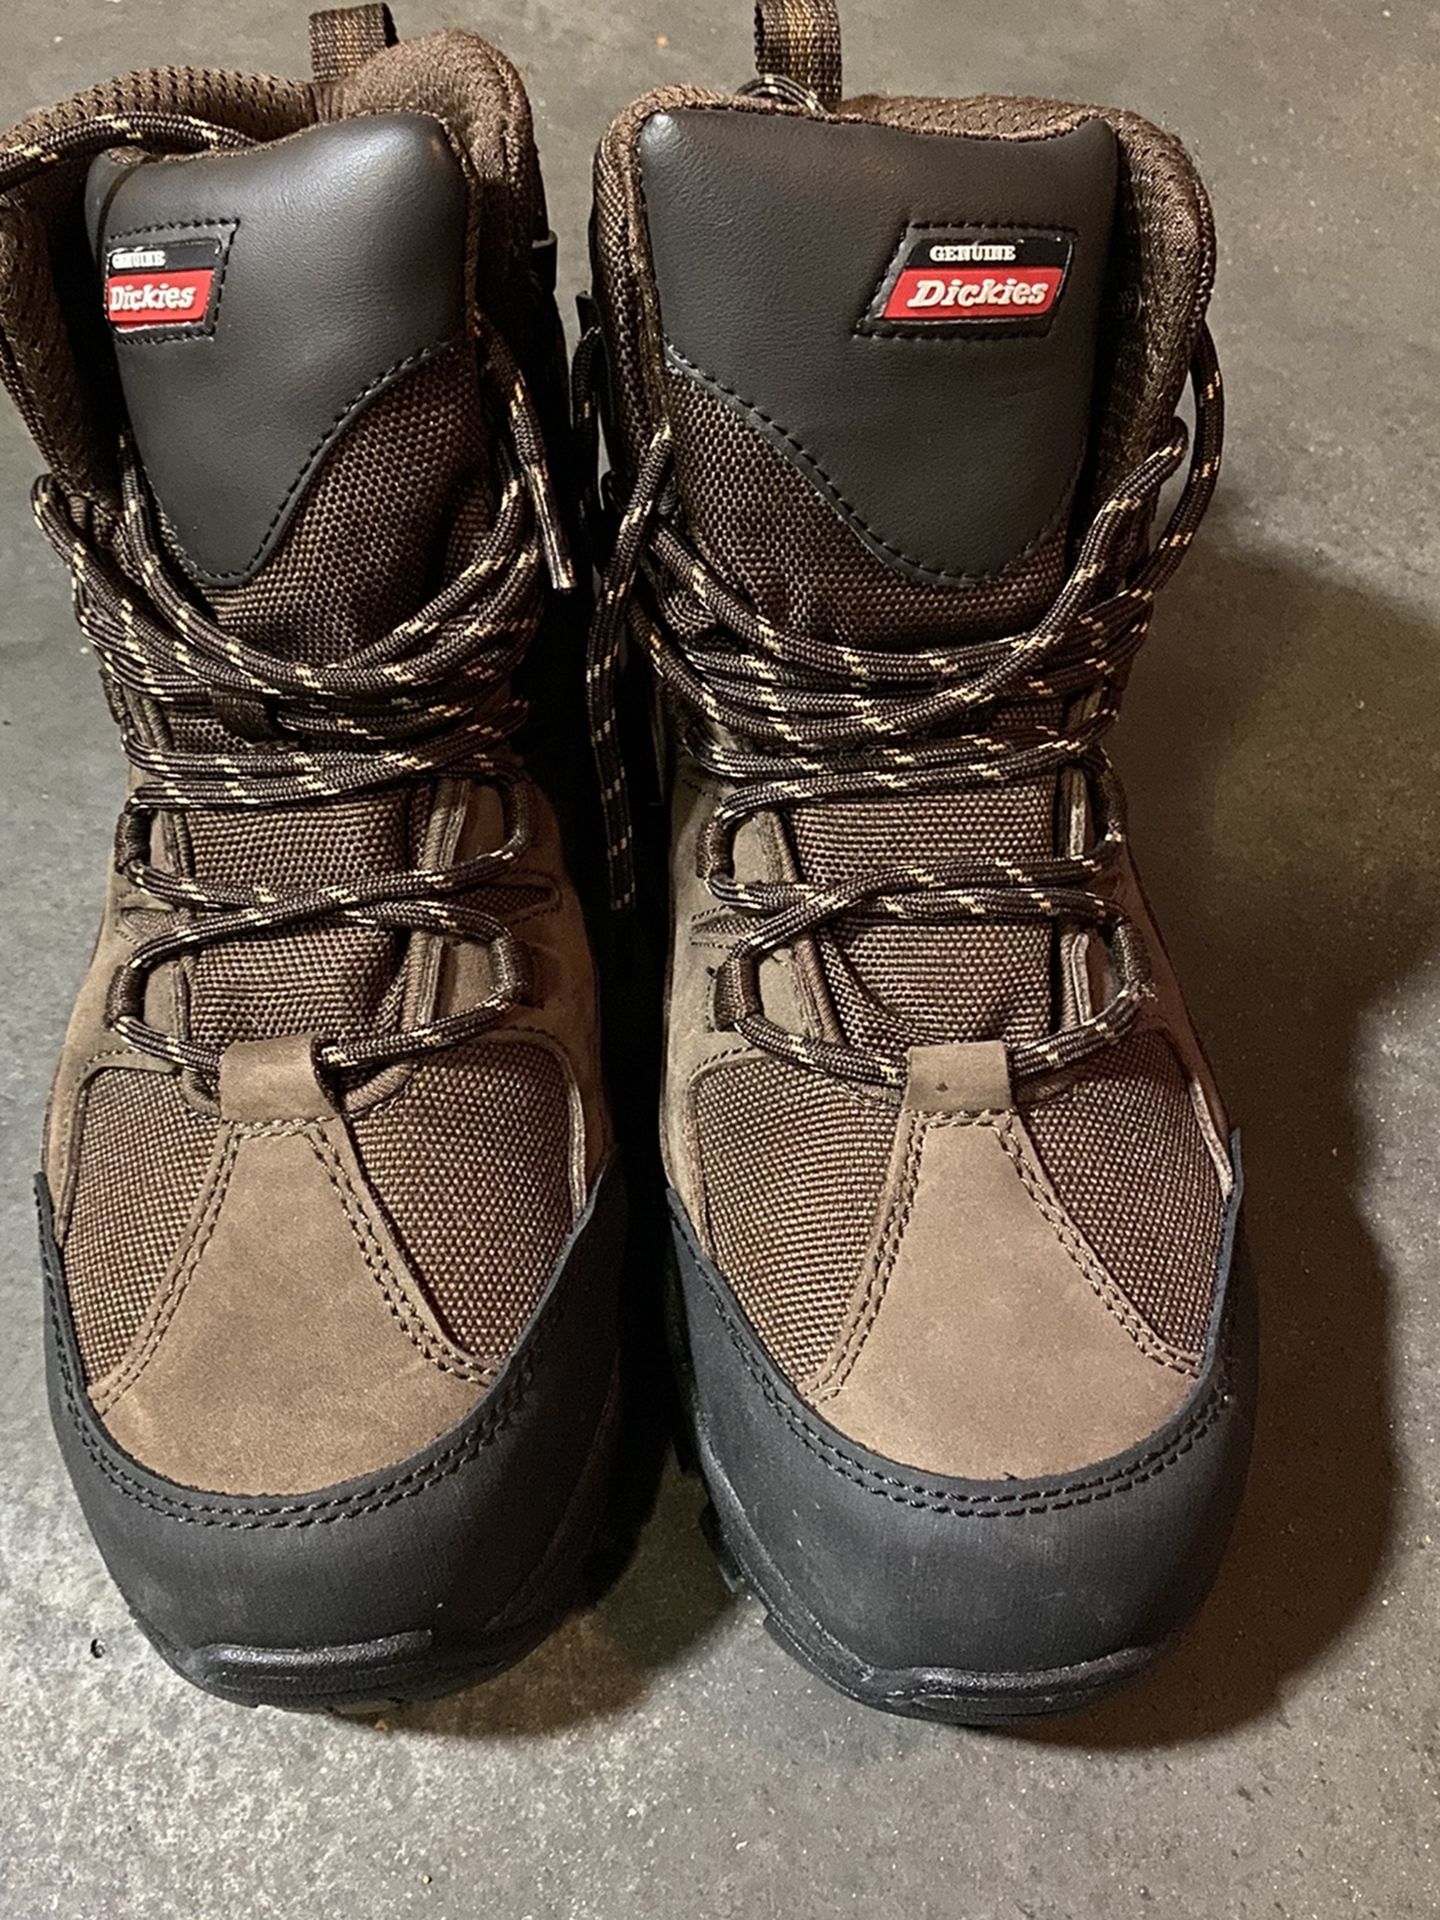 Dickies Slip Resistant Steel Toe Work Boots